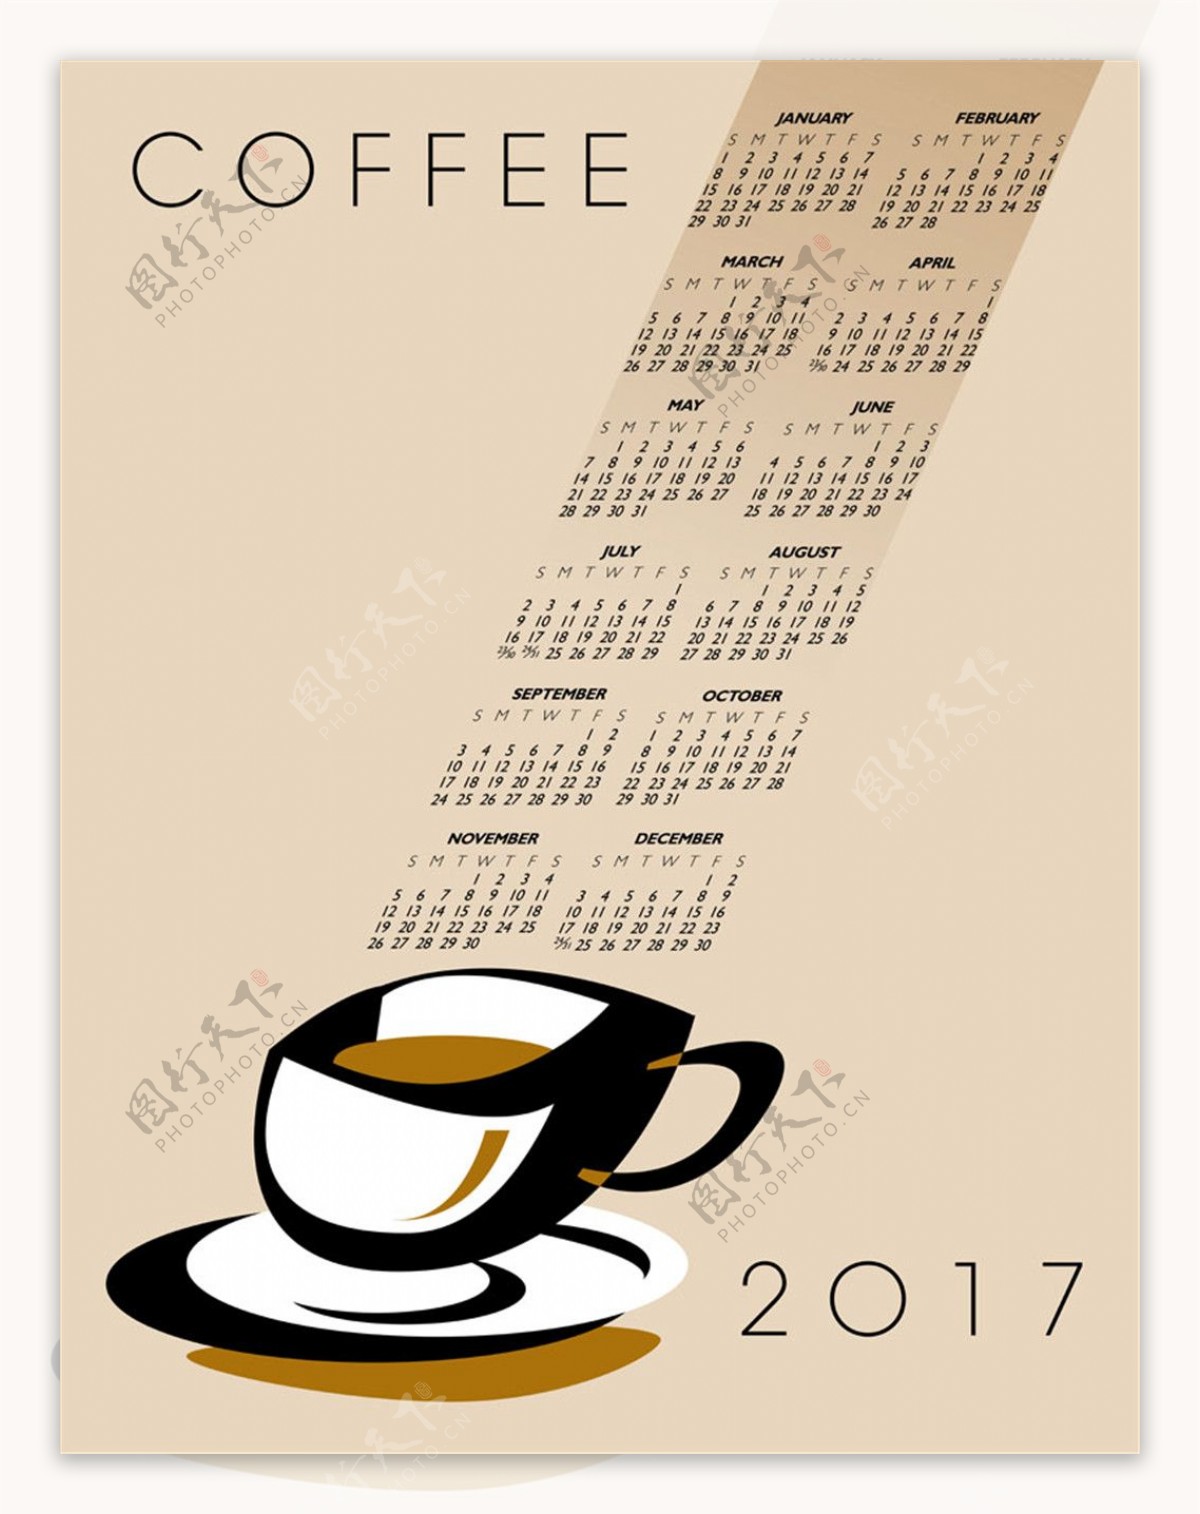 咖啡杯2017年日历表图片